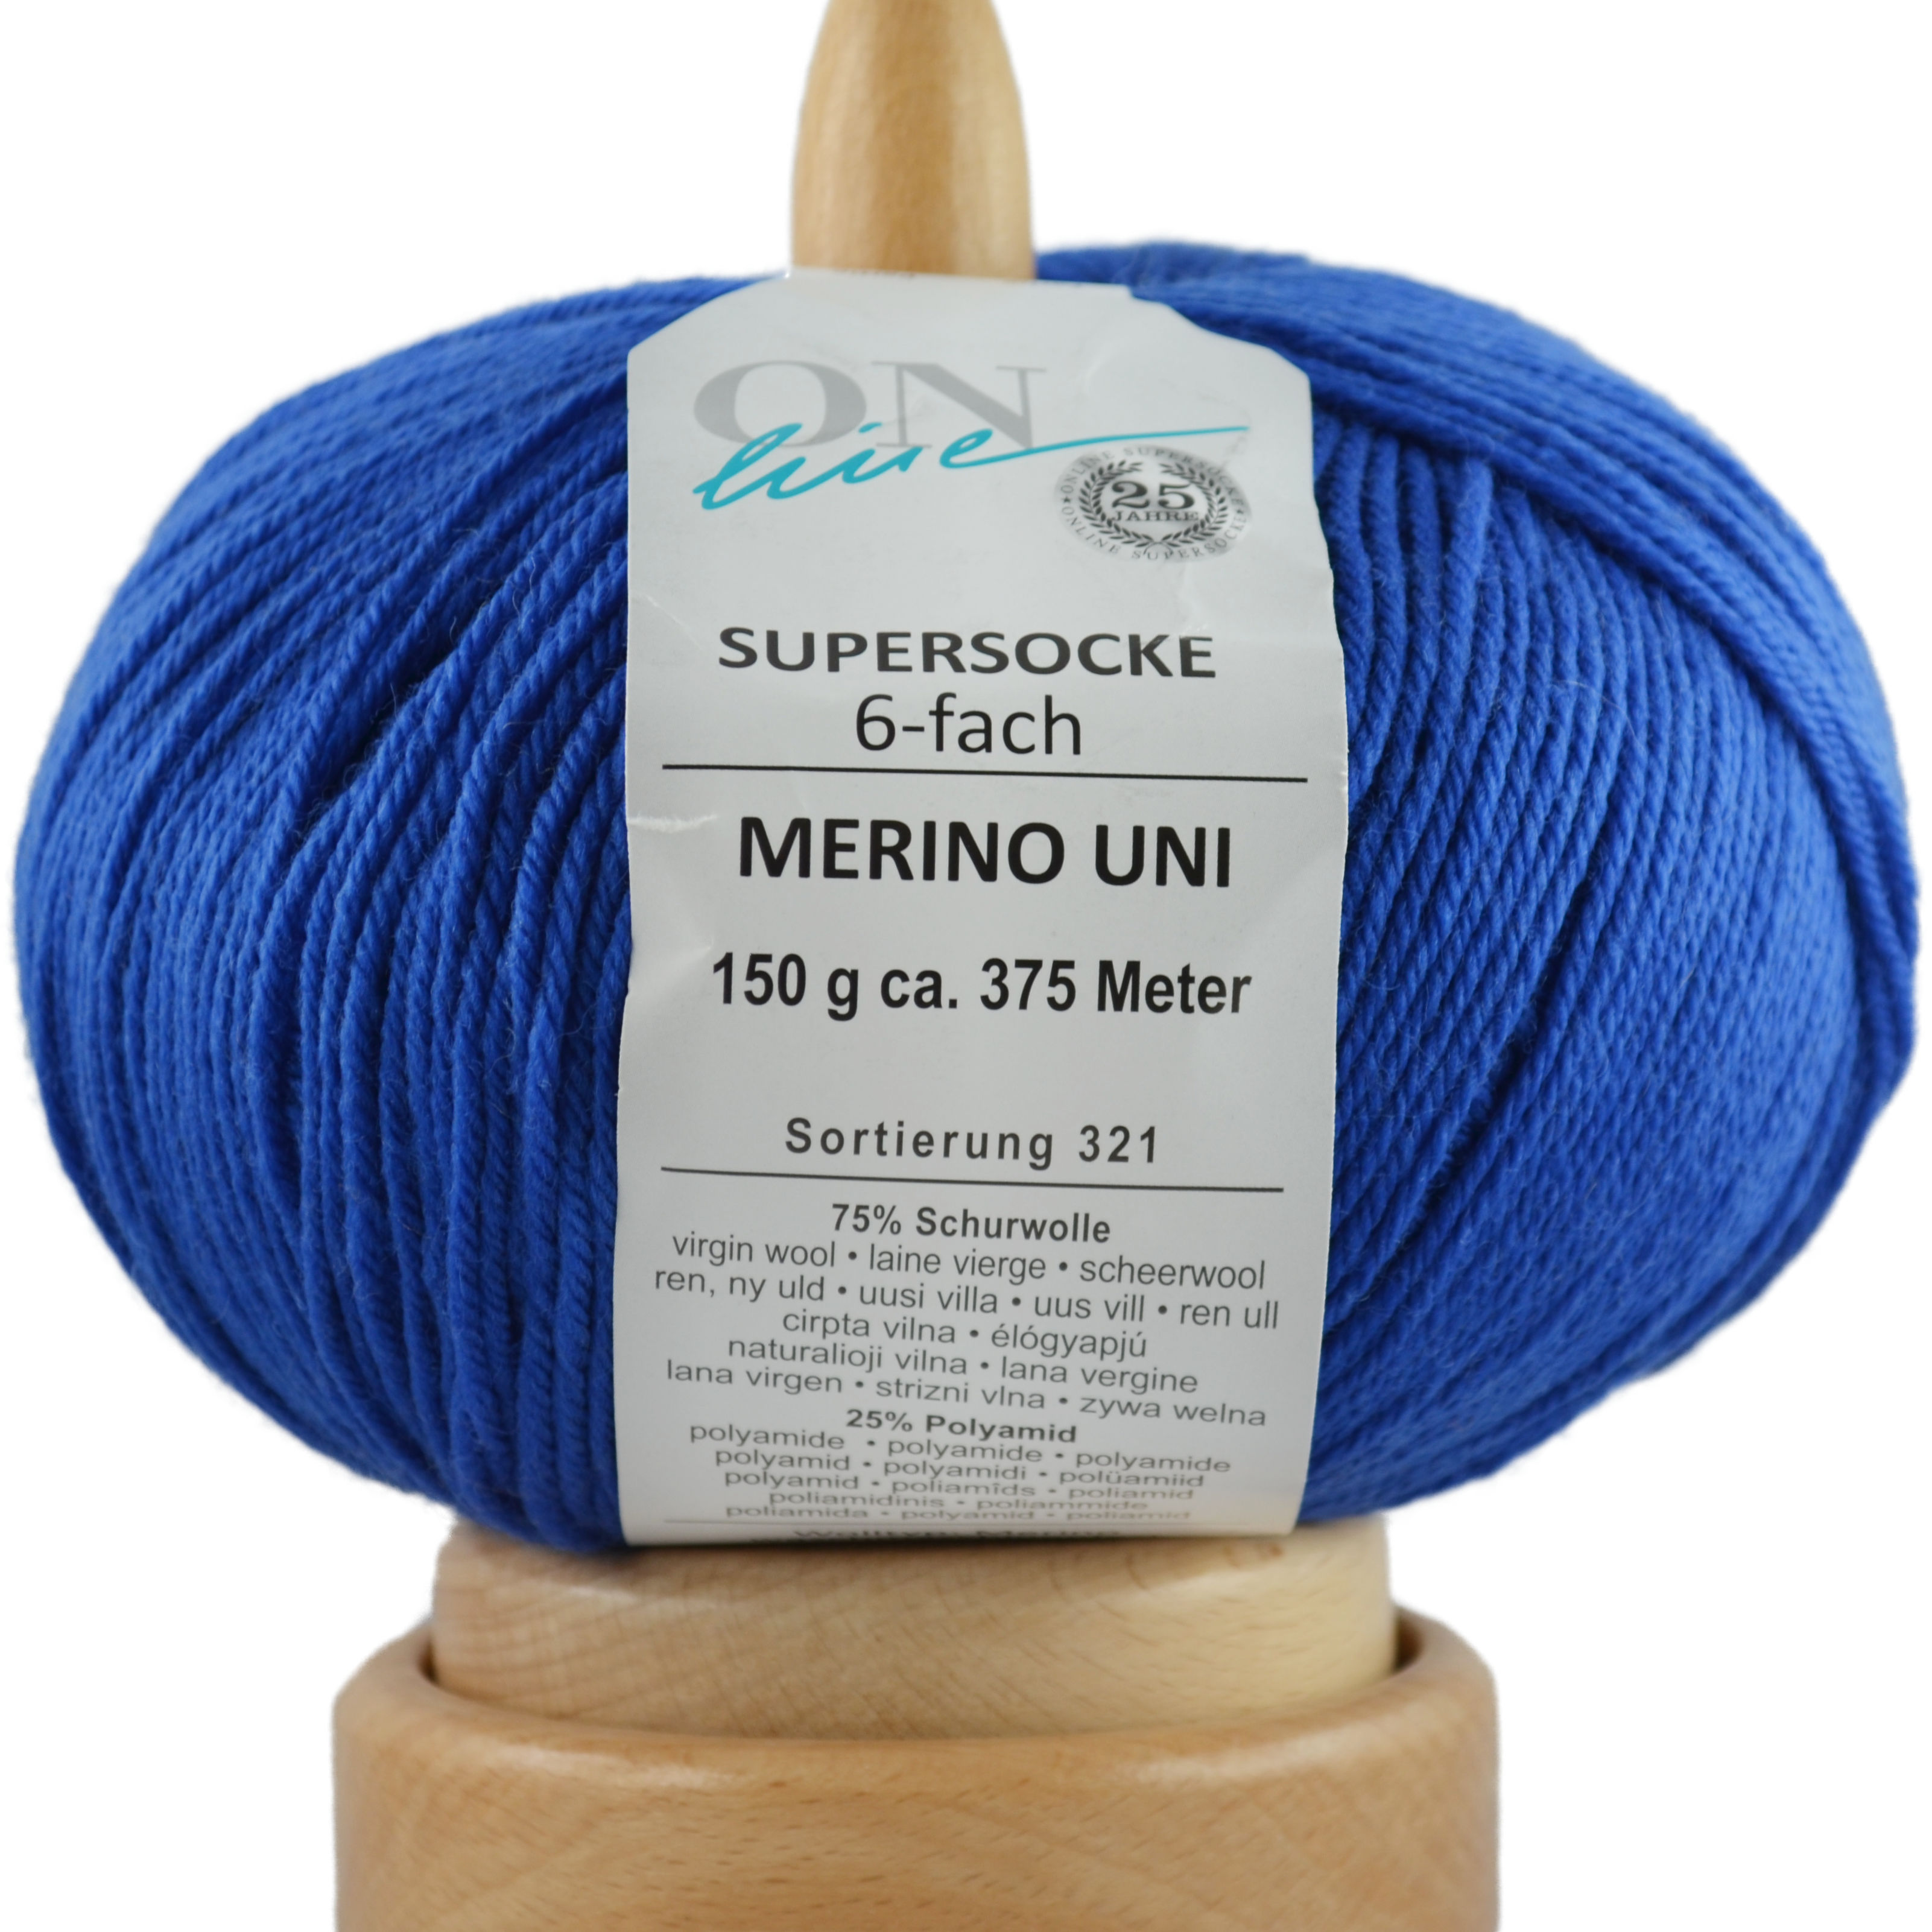 Supersocke 6-fach Merino Uni von ONline Sort. 321 - 5009 - royal